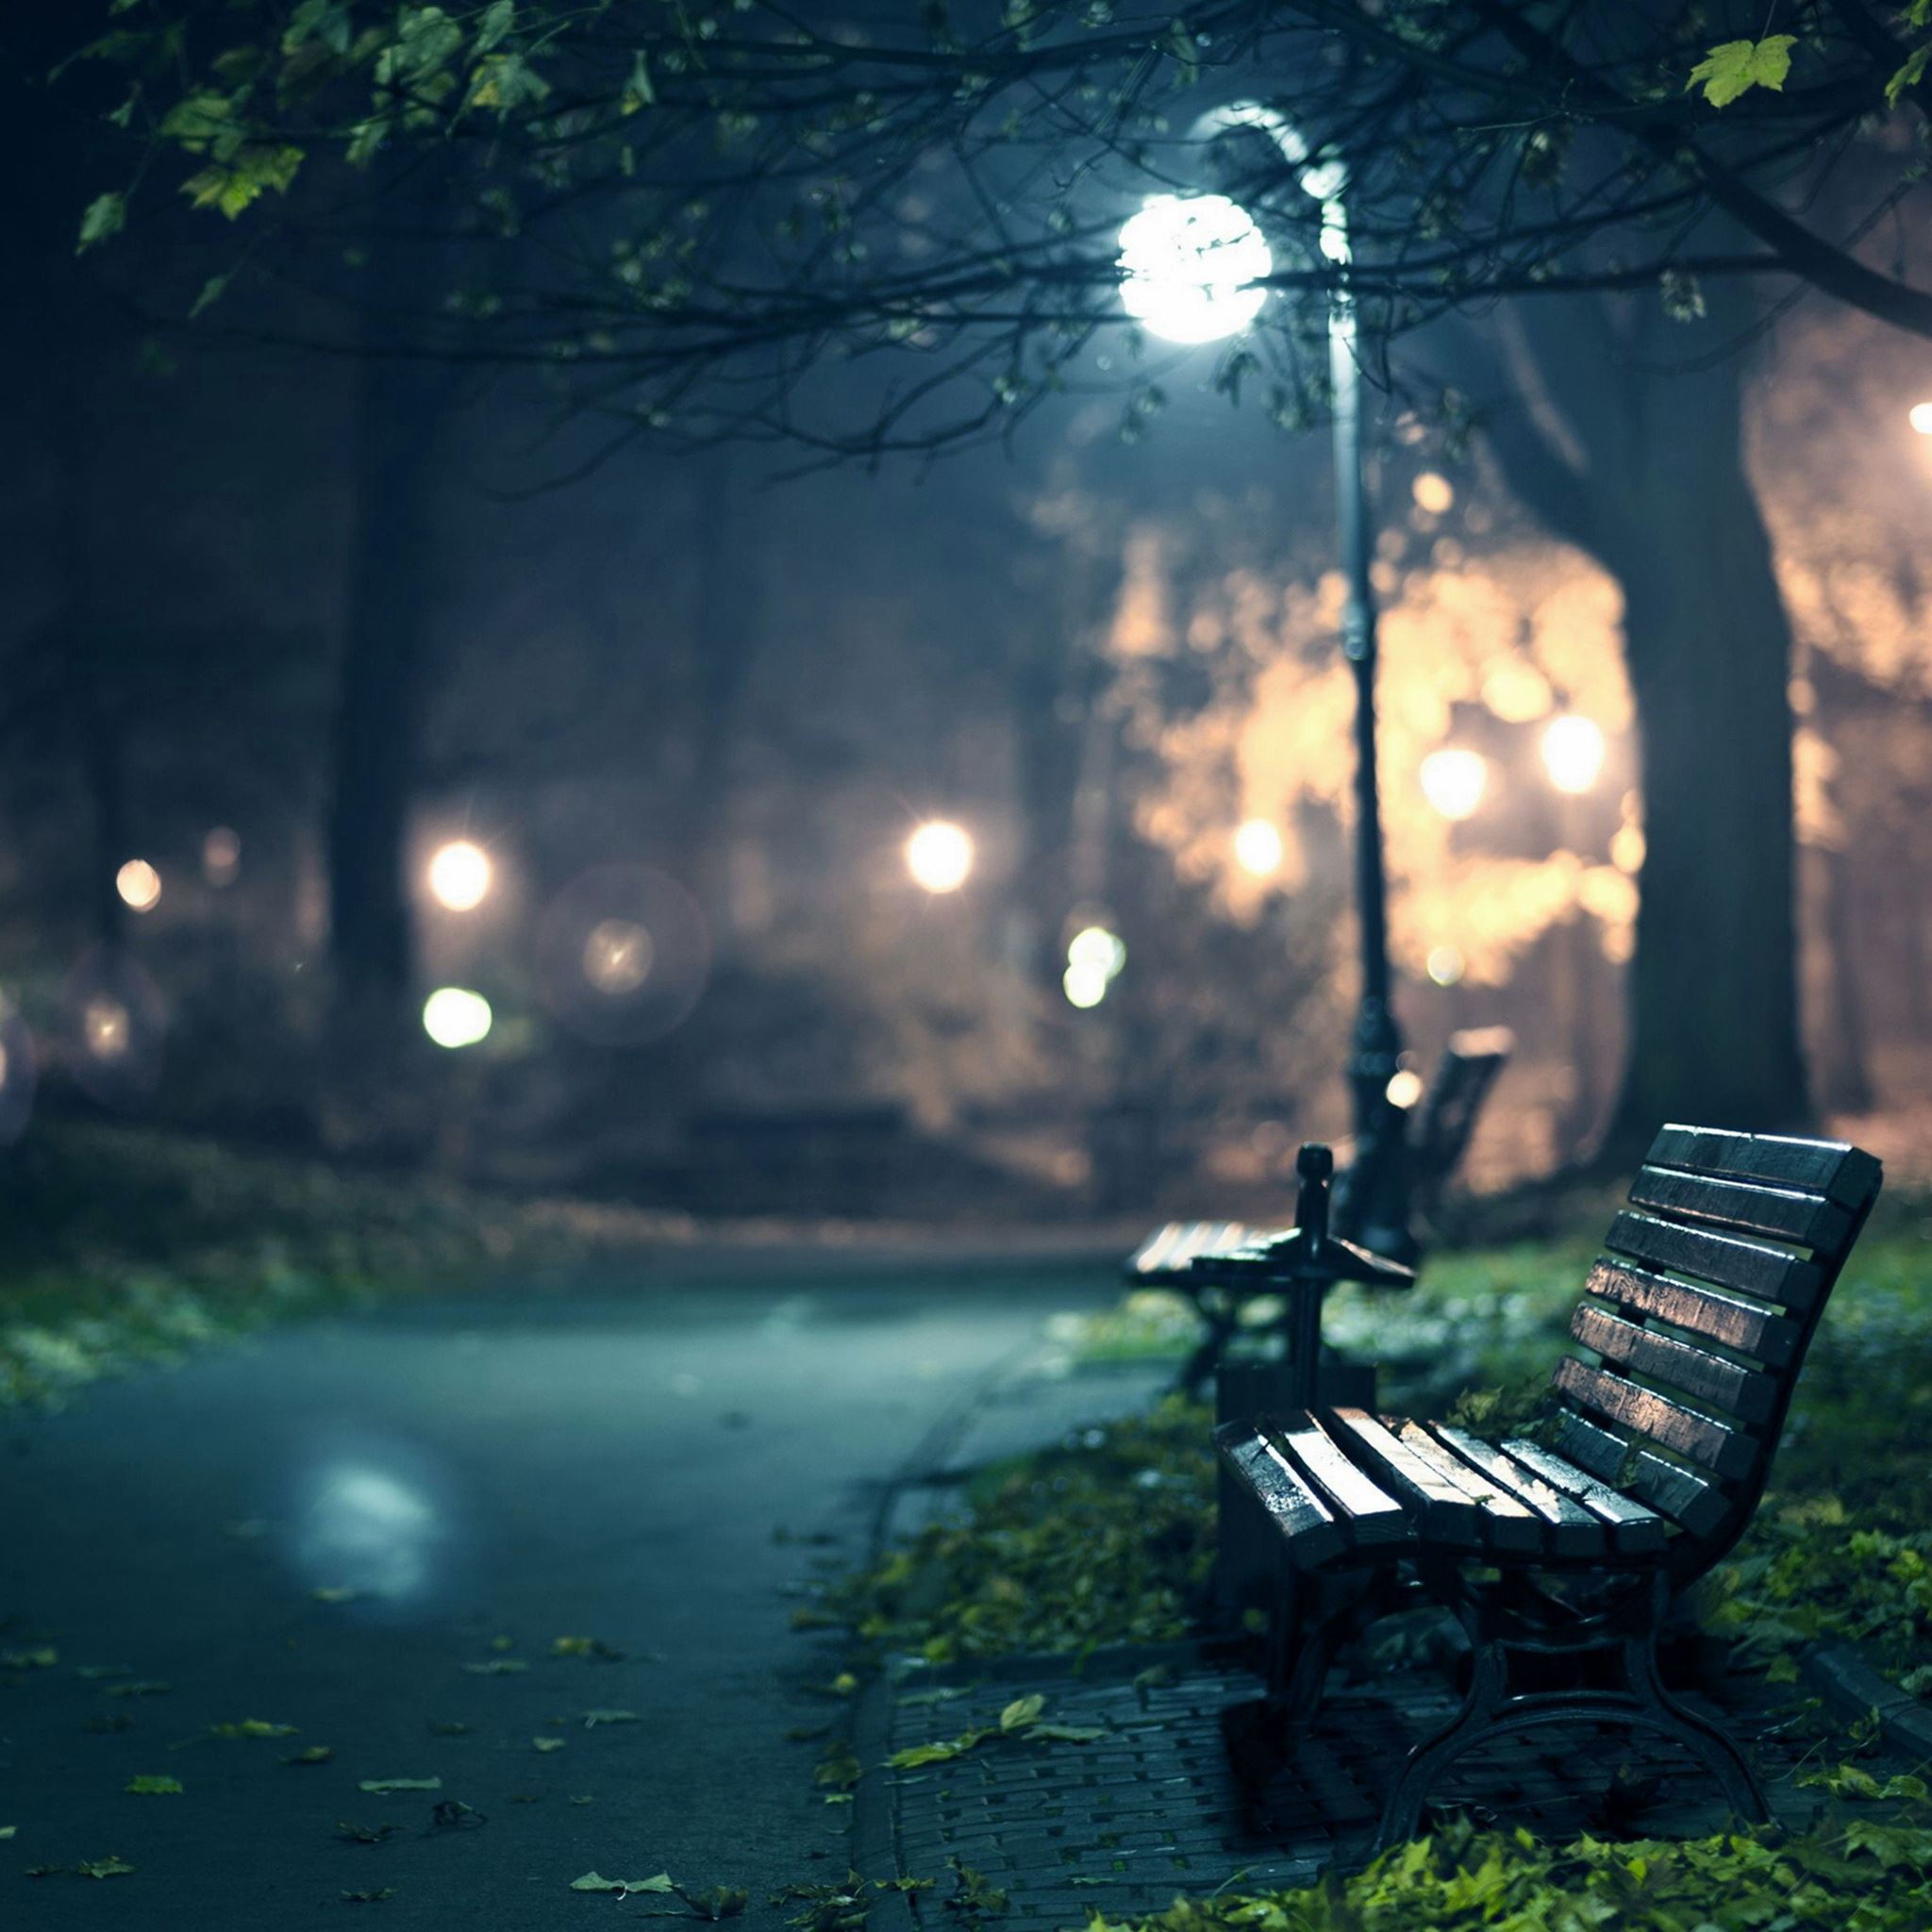 مشهور ترین عکس خیابان تنهایی با نیمکت و چراغ 1402